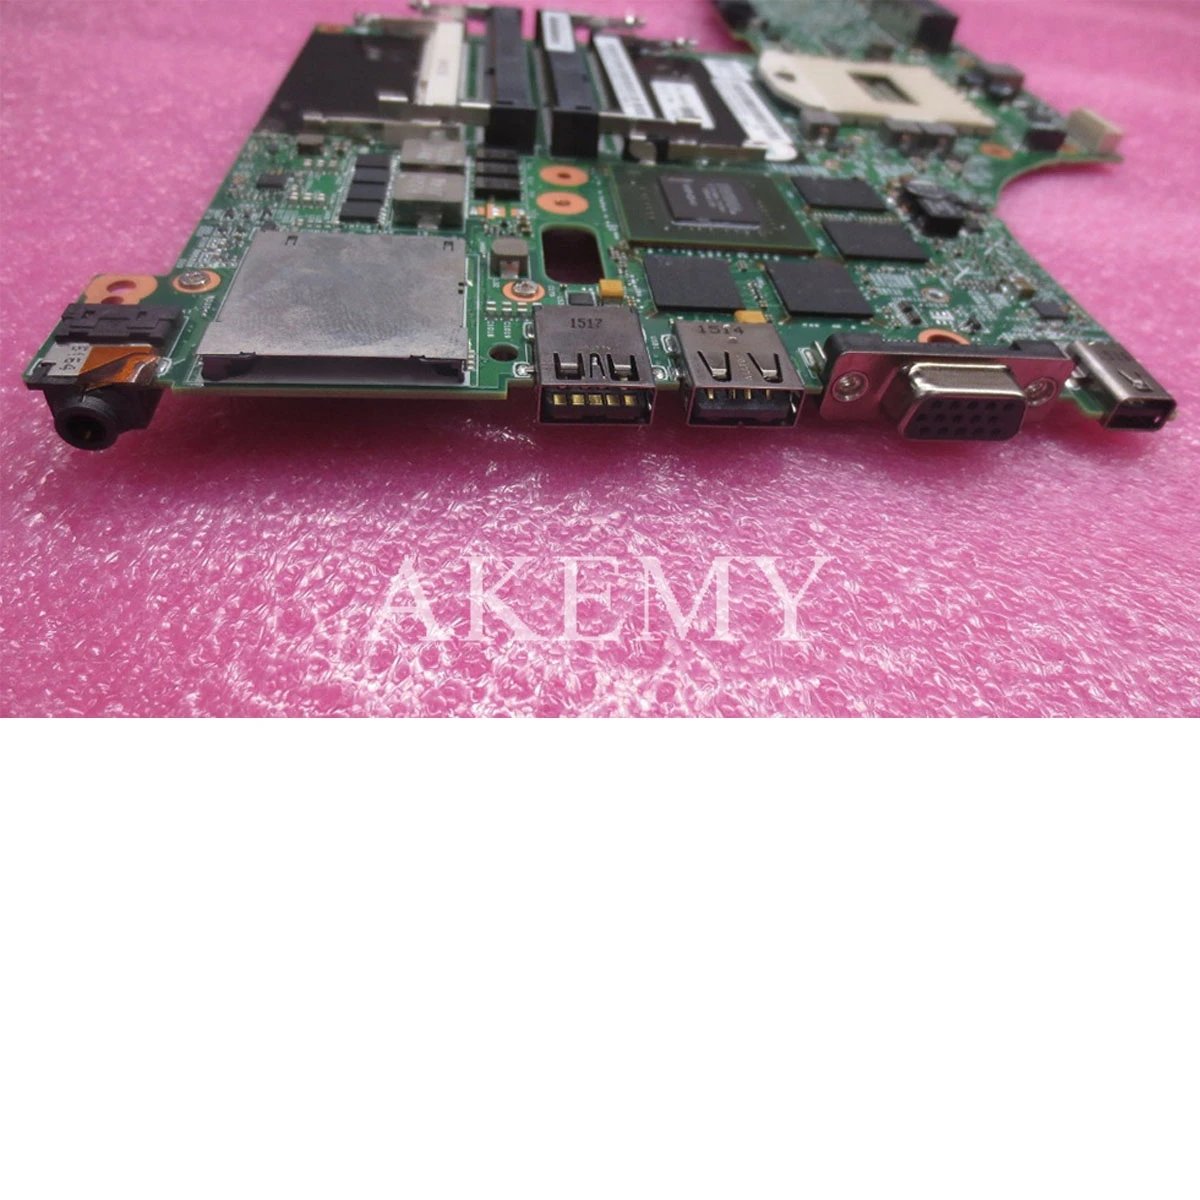 K2100m Q3 2G W8P HM87 00HW114 Pro Lenovo ThinkPad W540 W541 základní deska LKM-1 WS MB 12291-2 Test OK doprava zdarma 0